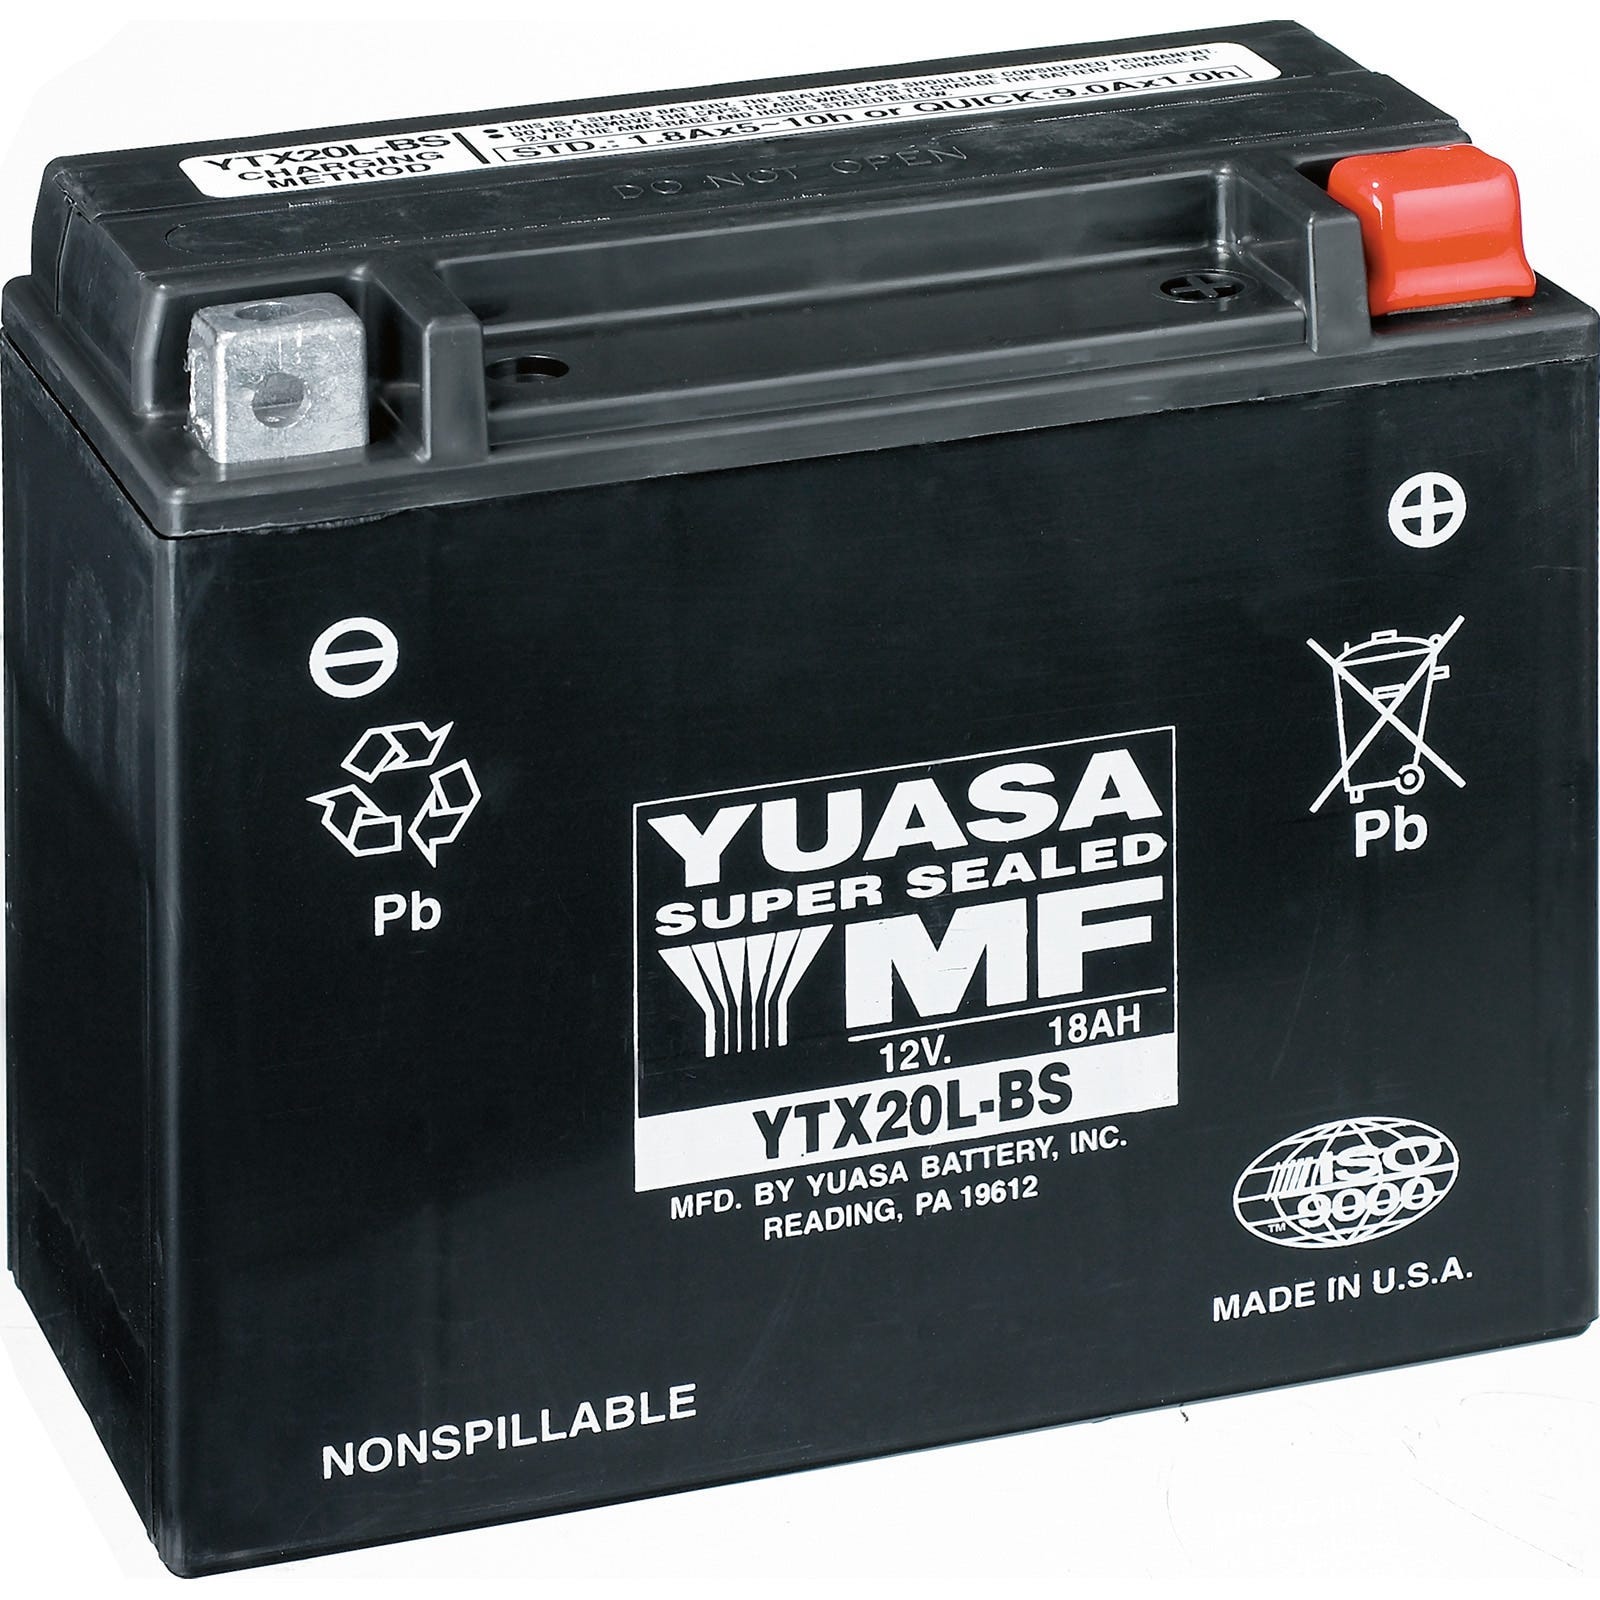 Yuasa Batteries - 415129898 - The Parts Lodge